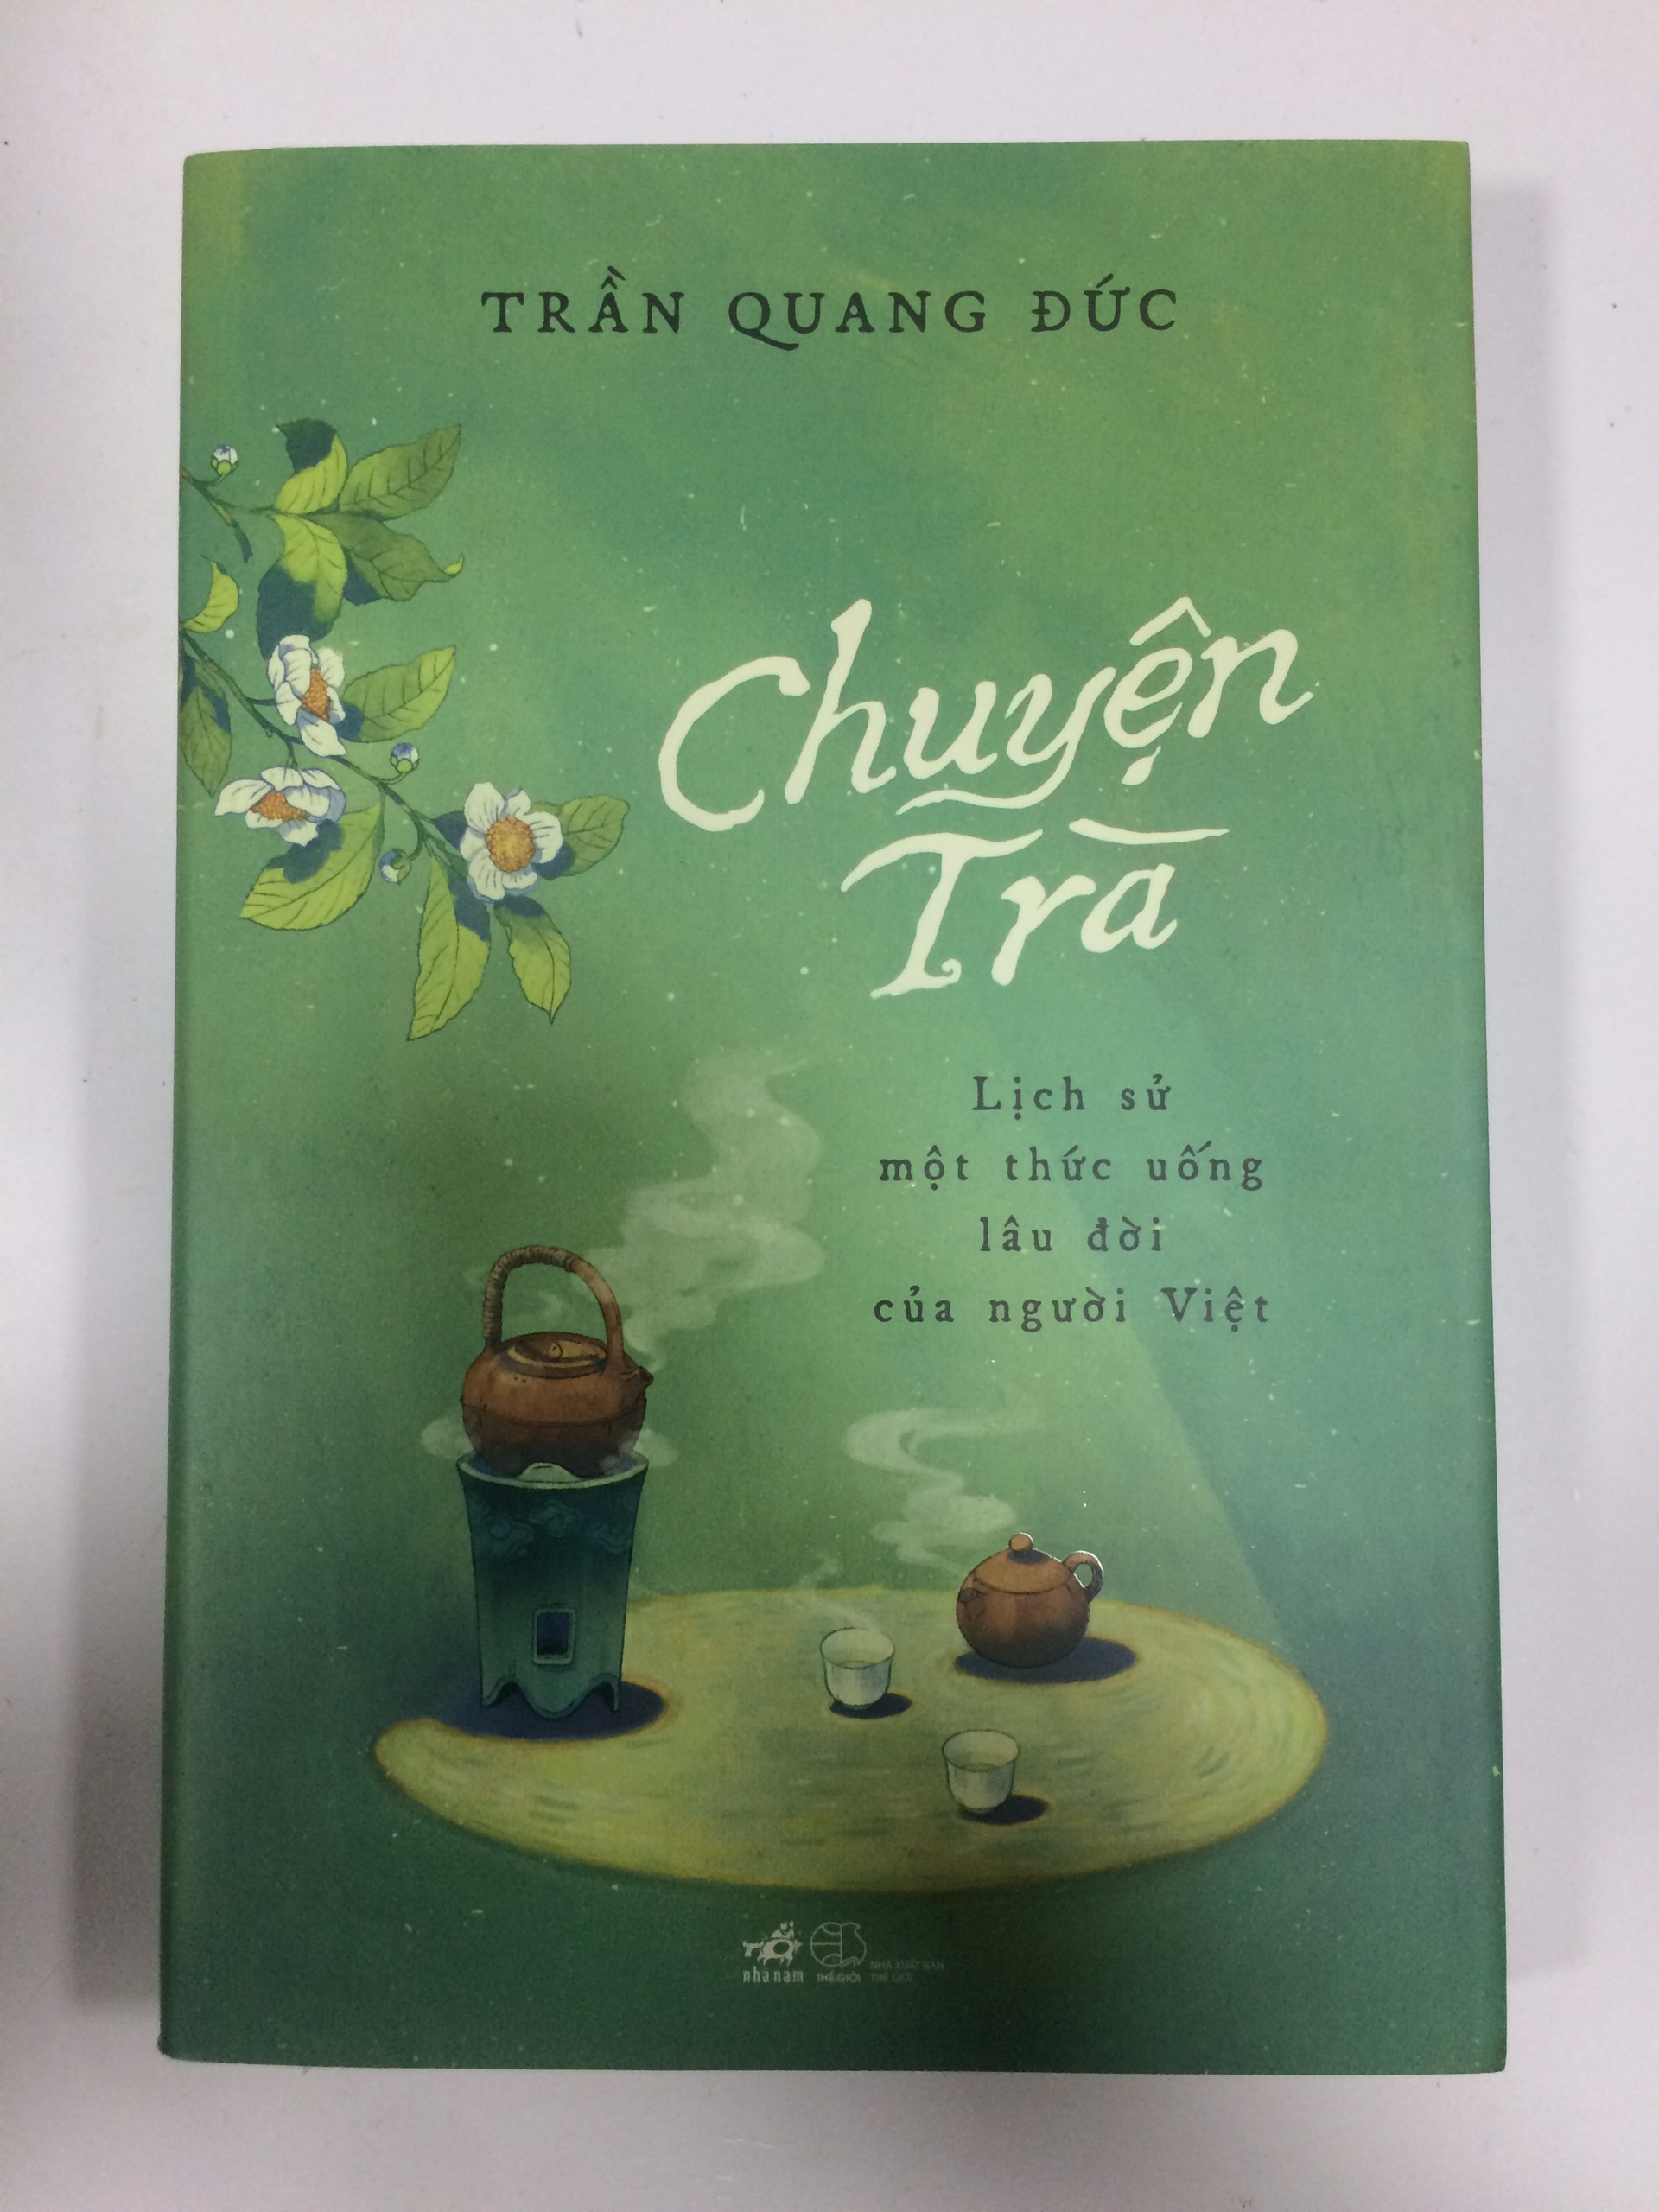 Chuyện trà - Lịch sử một thức uống lâu đời của người Việt (Bìa mềm)